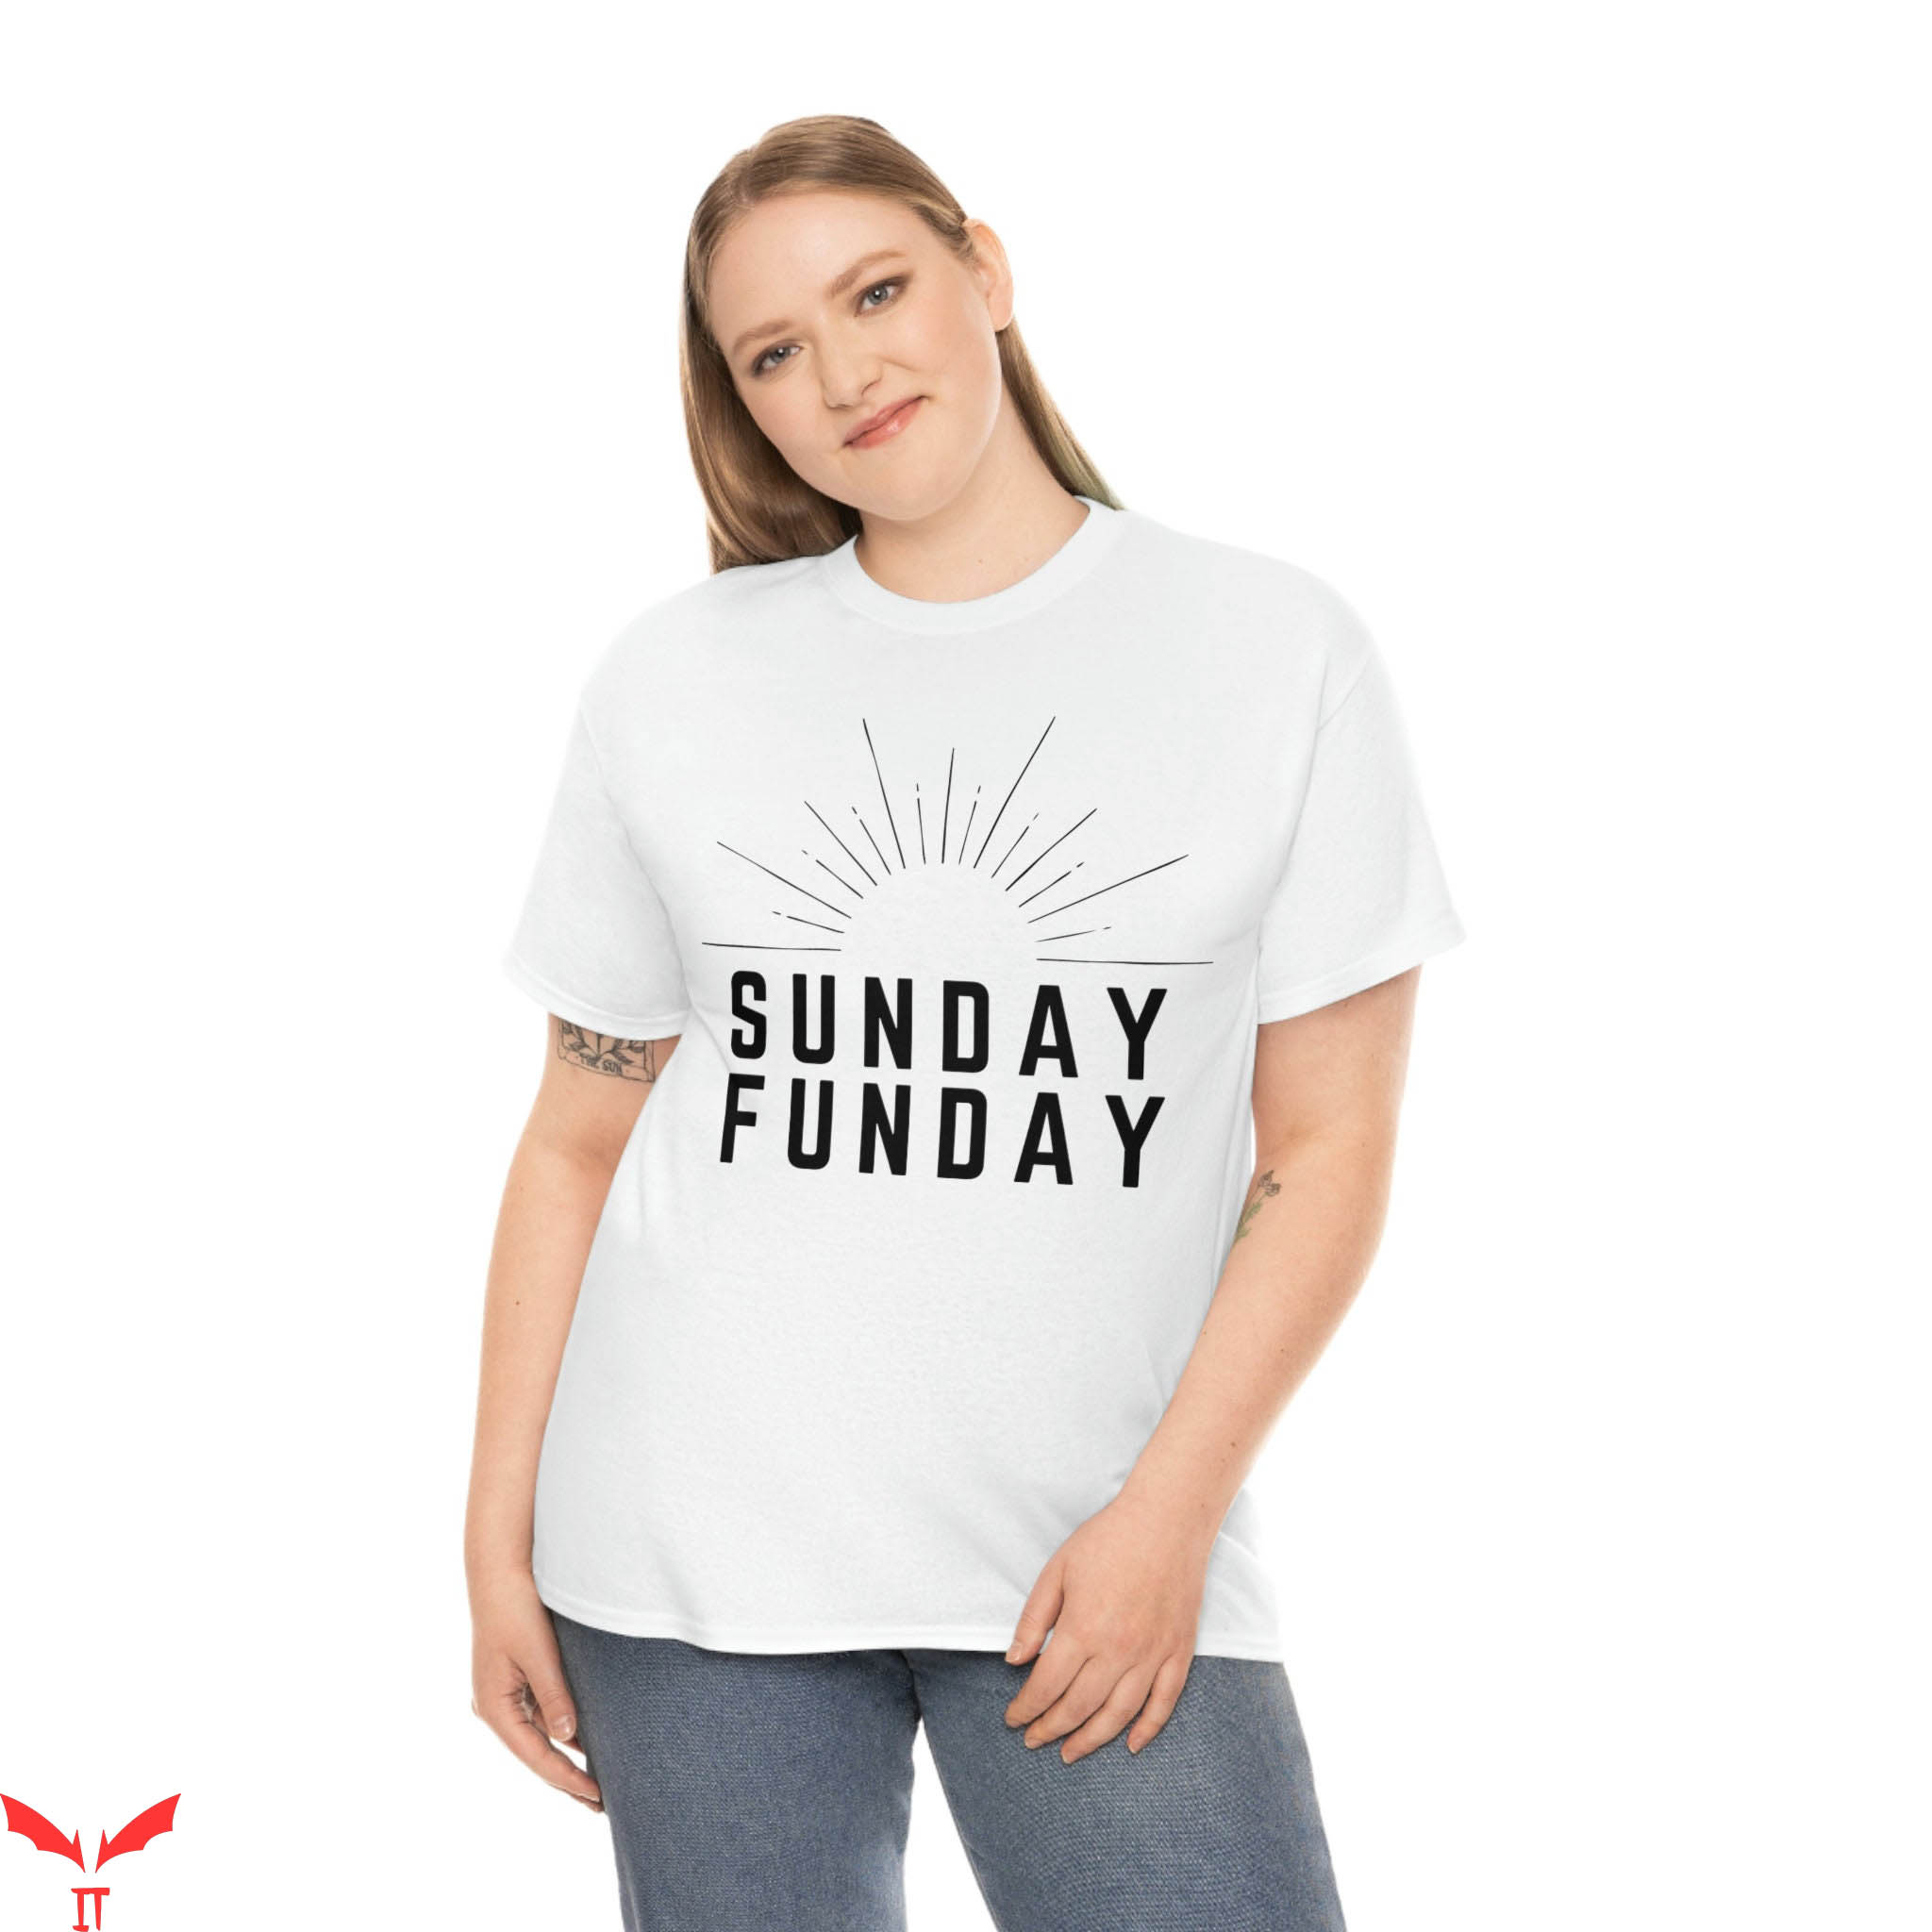 Sunday Funday T-Shirt Sunday Funday Sunshine Shirt